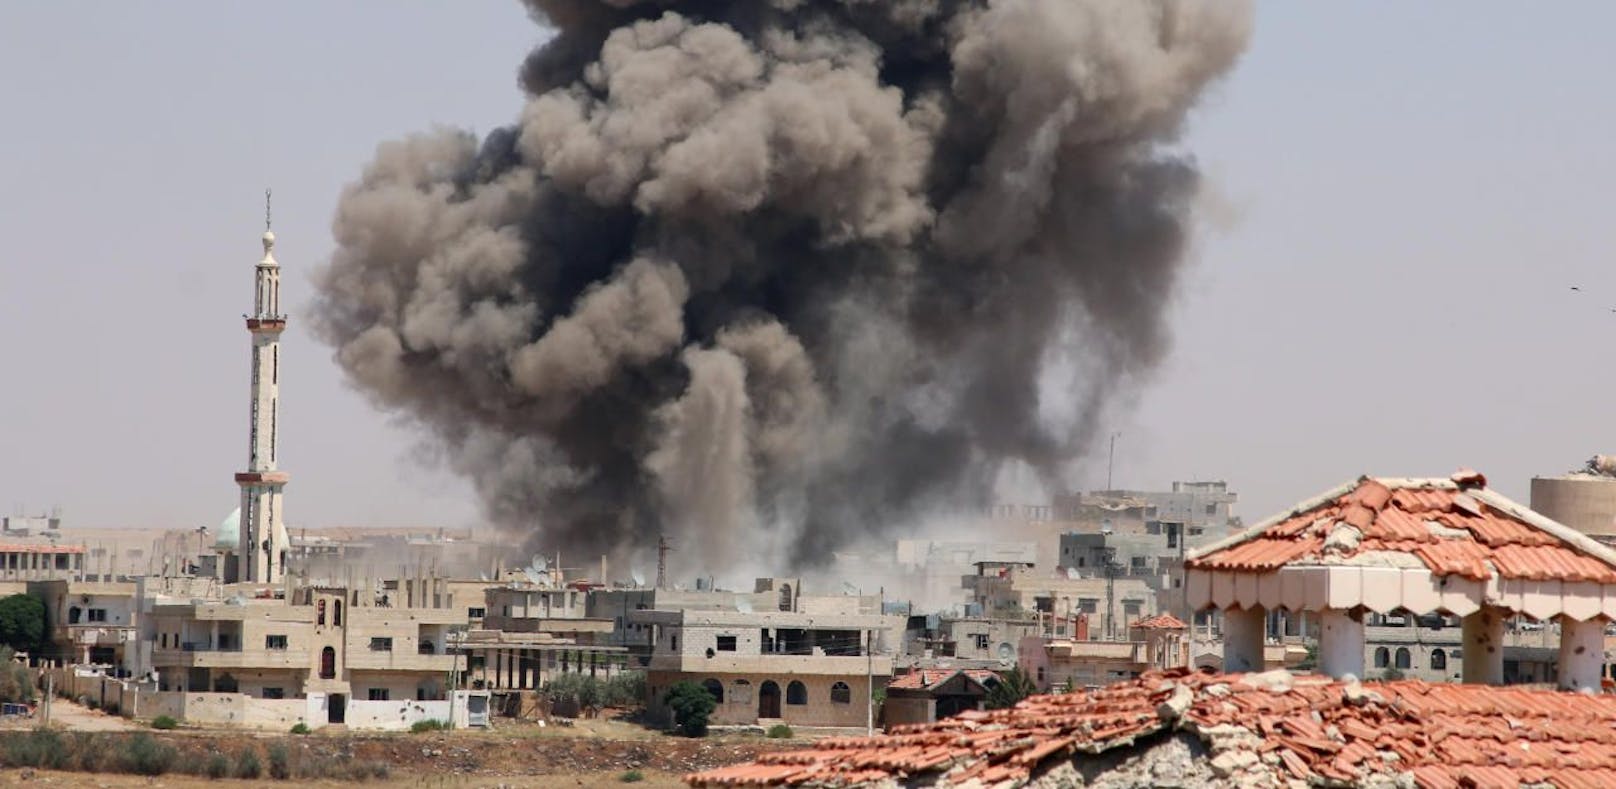 Bei einem Luftangriff auf ein IS-Gefängnis sollen 15 Dschihadisten und 42 Häftlinge ums Leben gekommen sein. Archivbild.